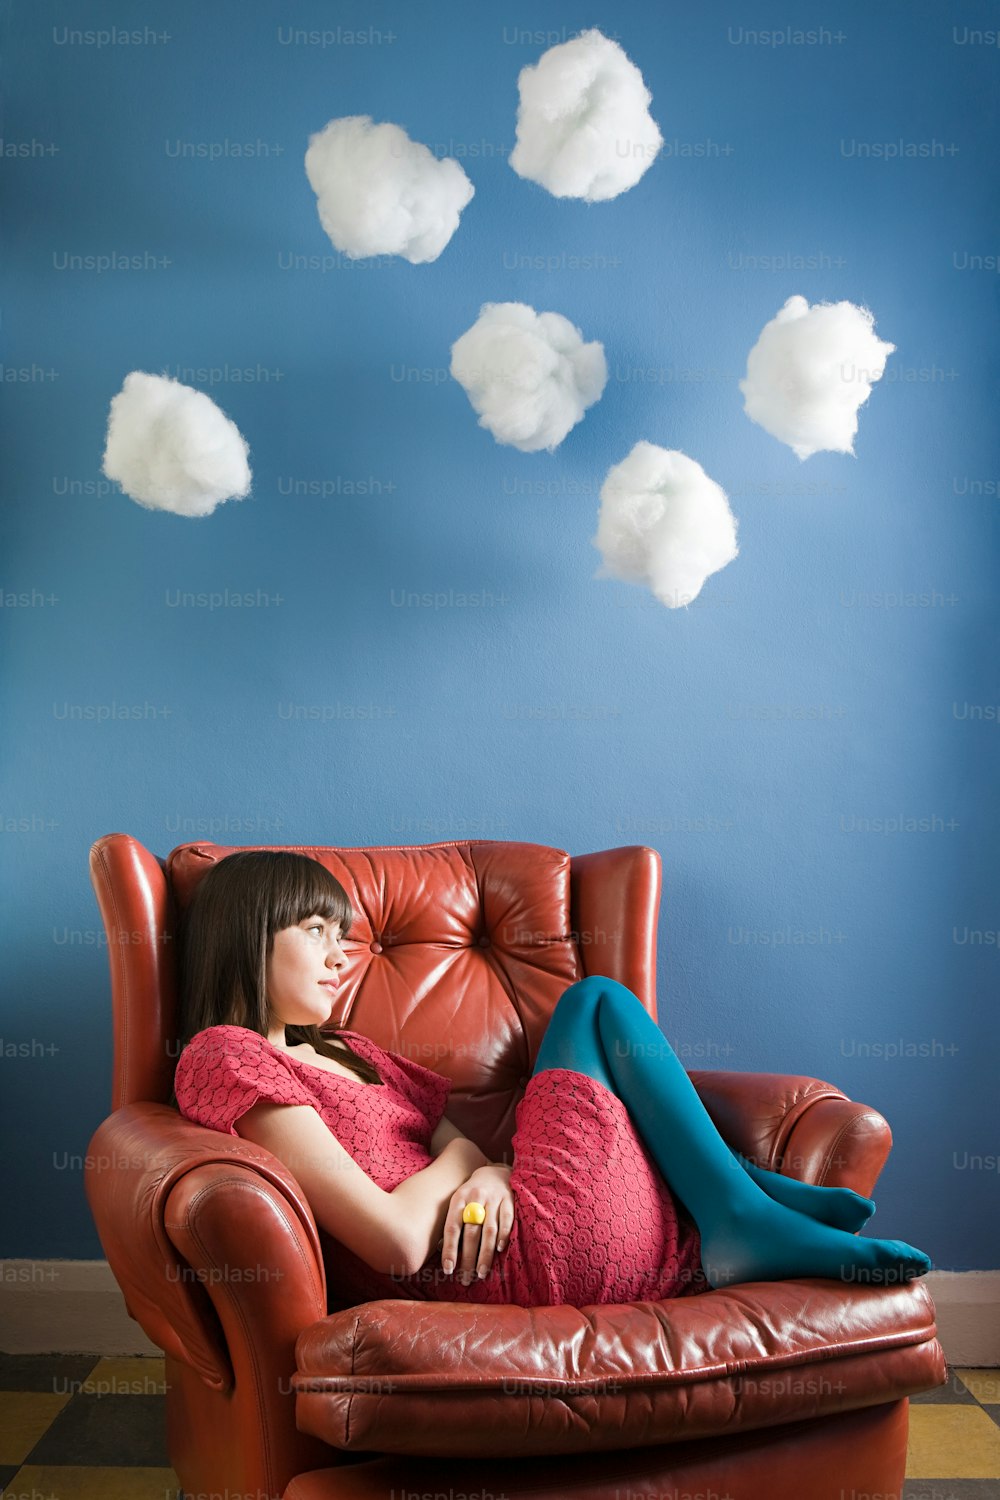 Foto Una mujer sentada en un sofá azul con calcetines blancos – Imagen  Calcetines gratis en Unsplash